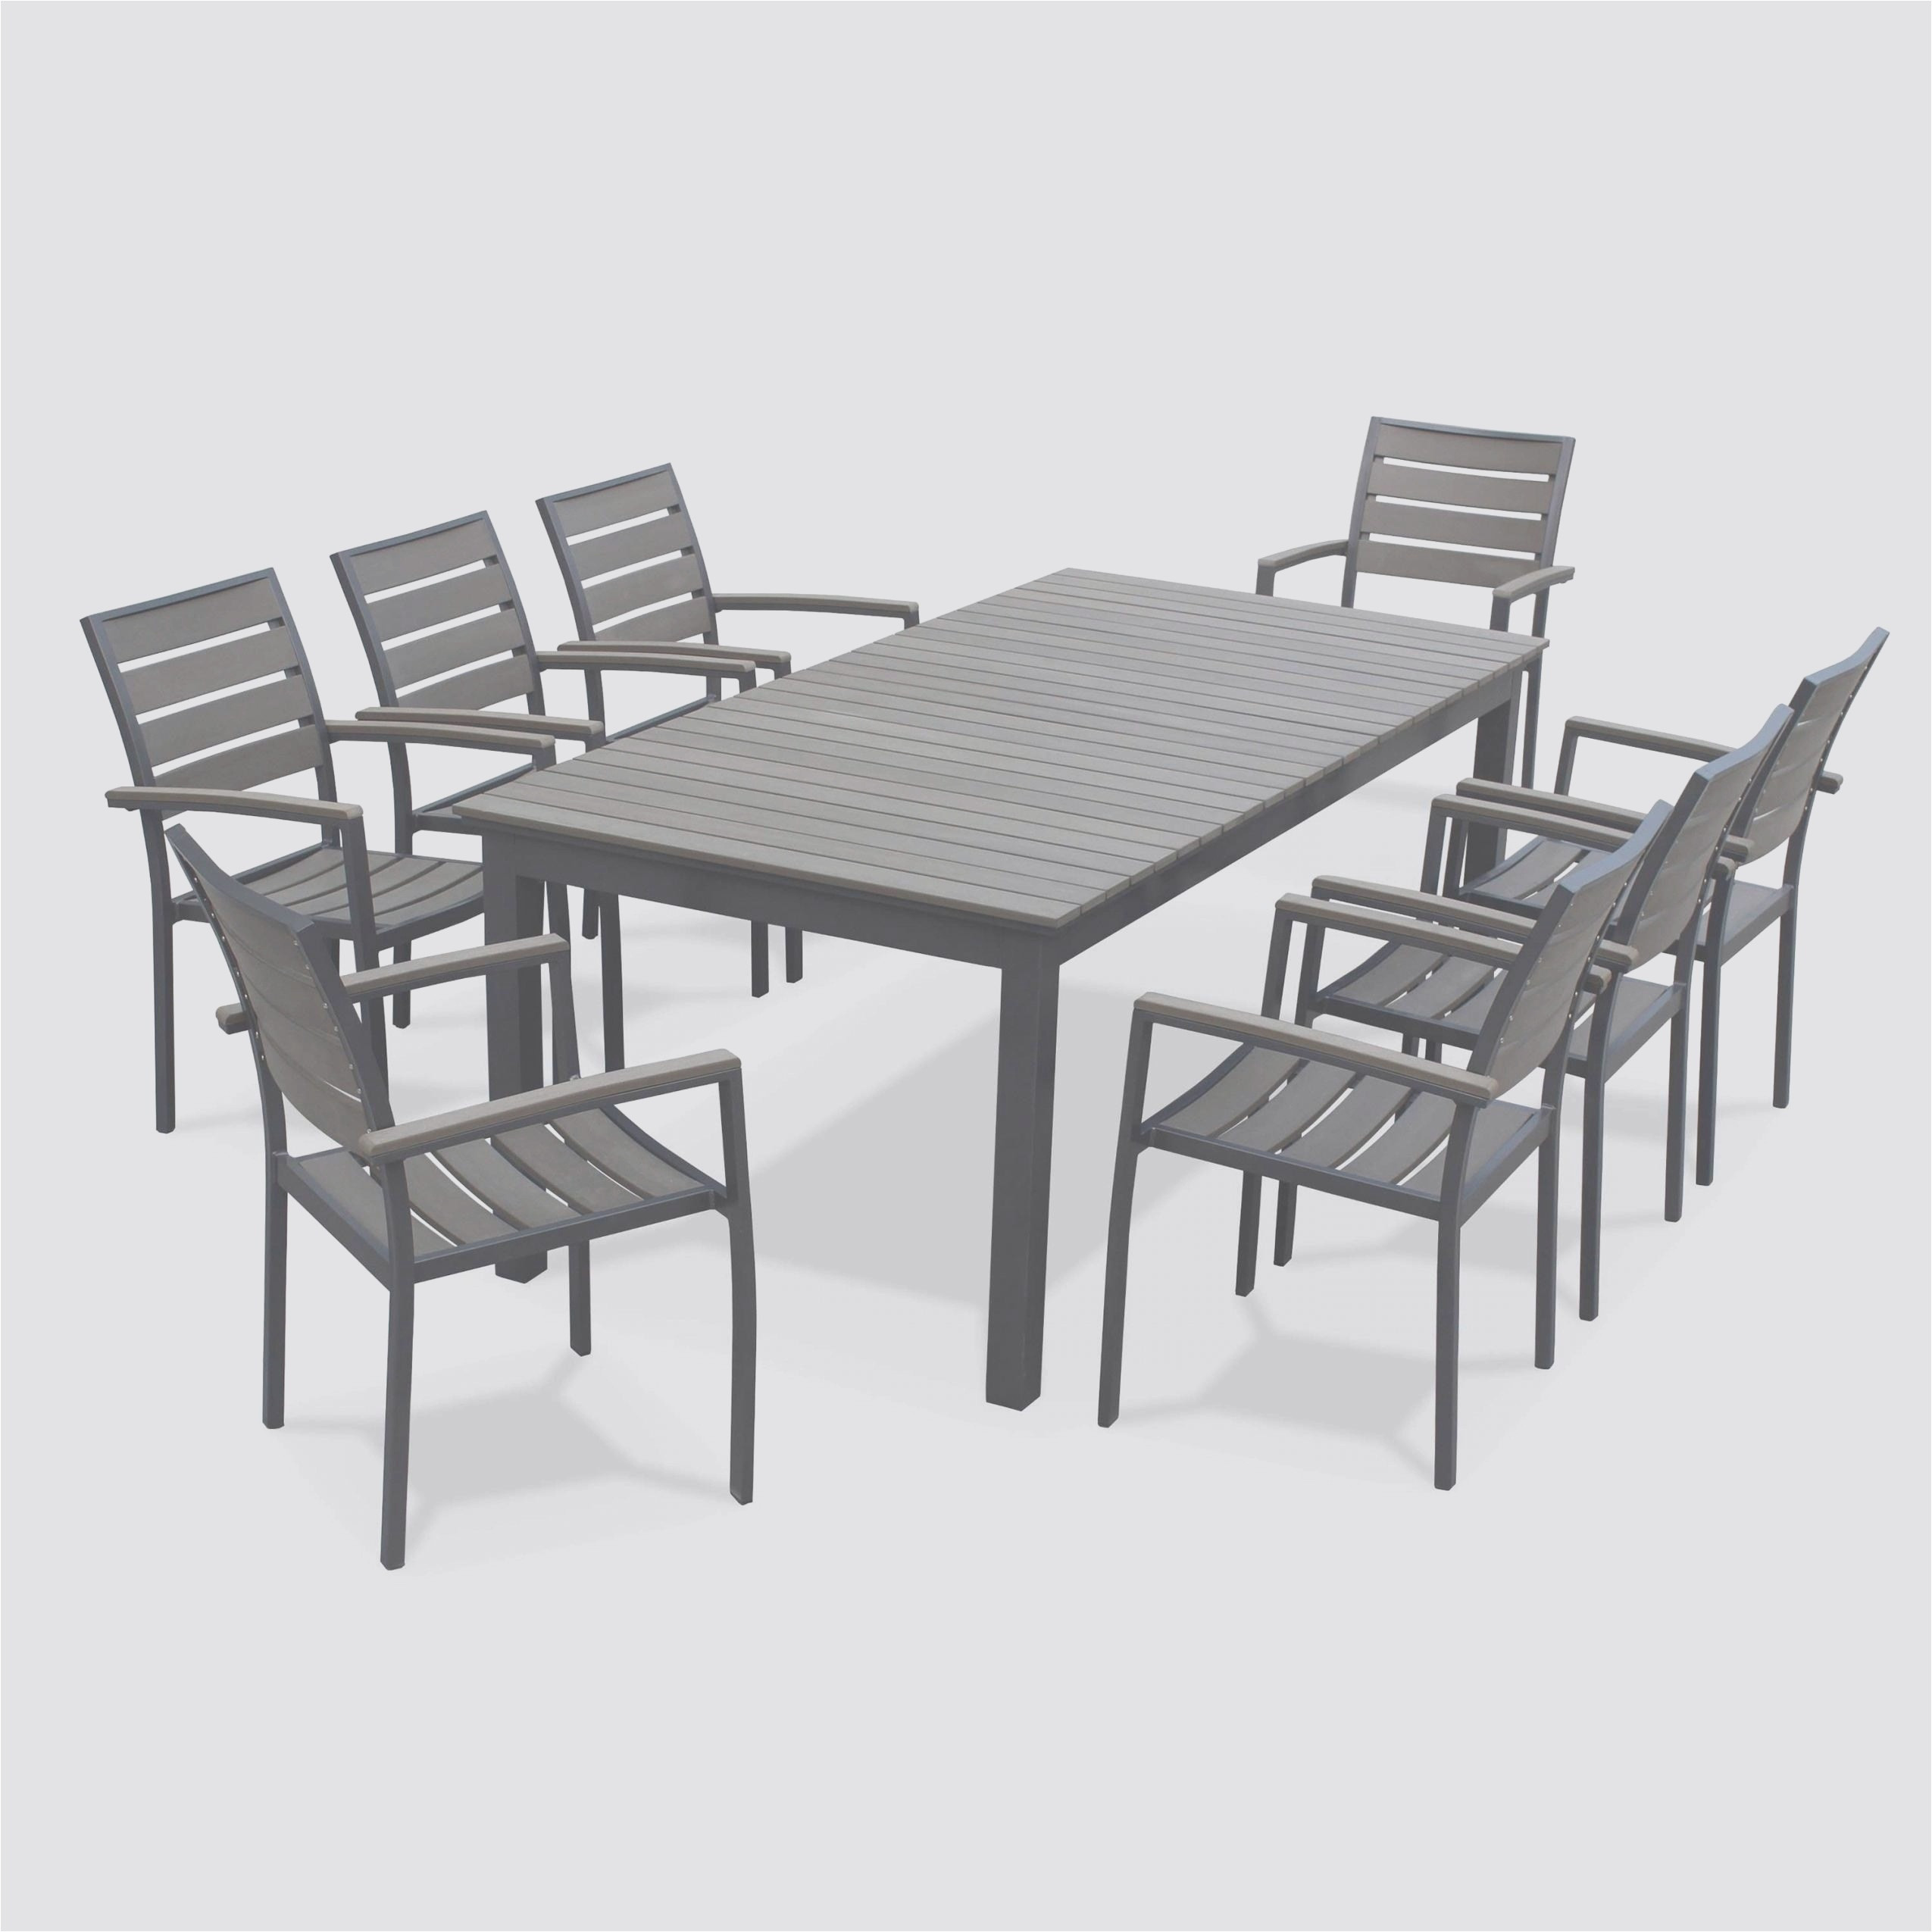 chaise pour table ronde genial table de jardin et chaises table ronde et chaise unique de chaise pour table ronde